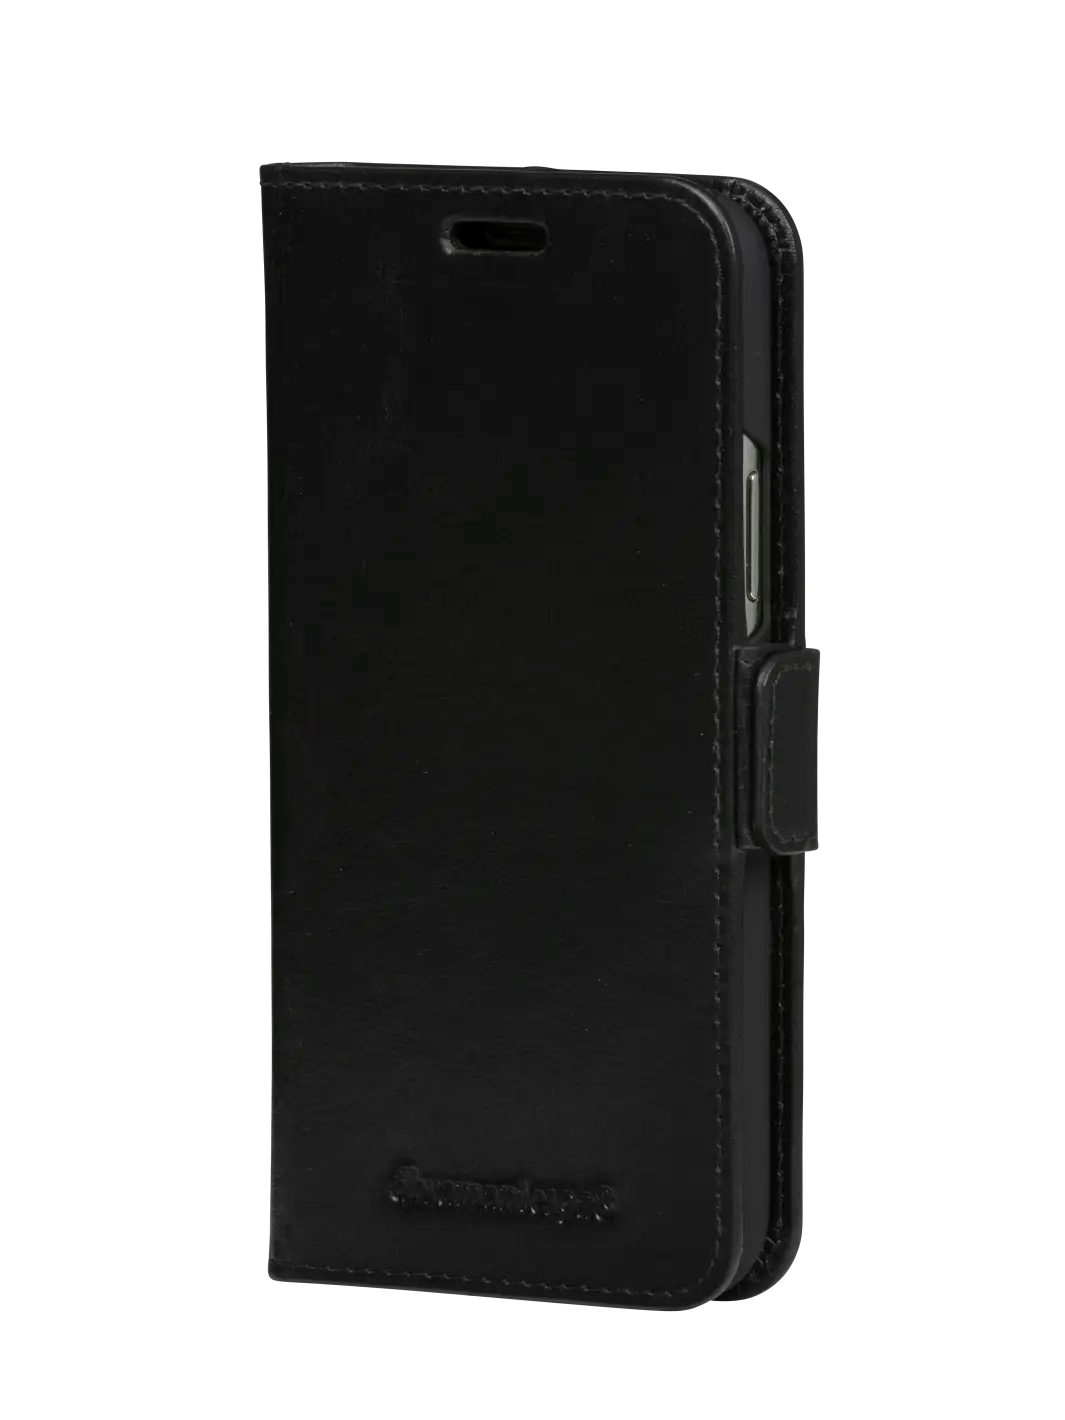 Copenhagen Slim Black iPhone 11 XR Phone Cases